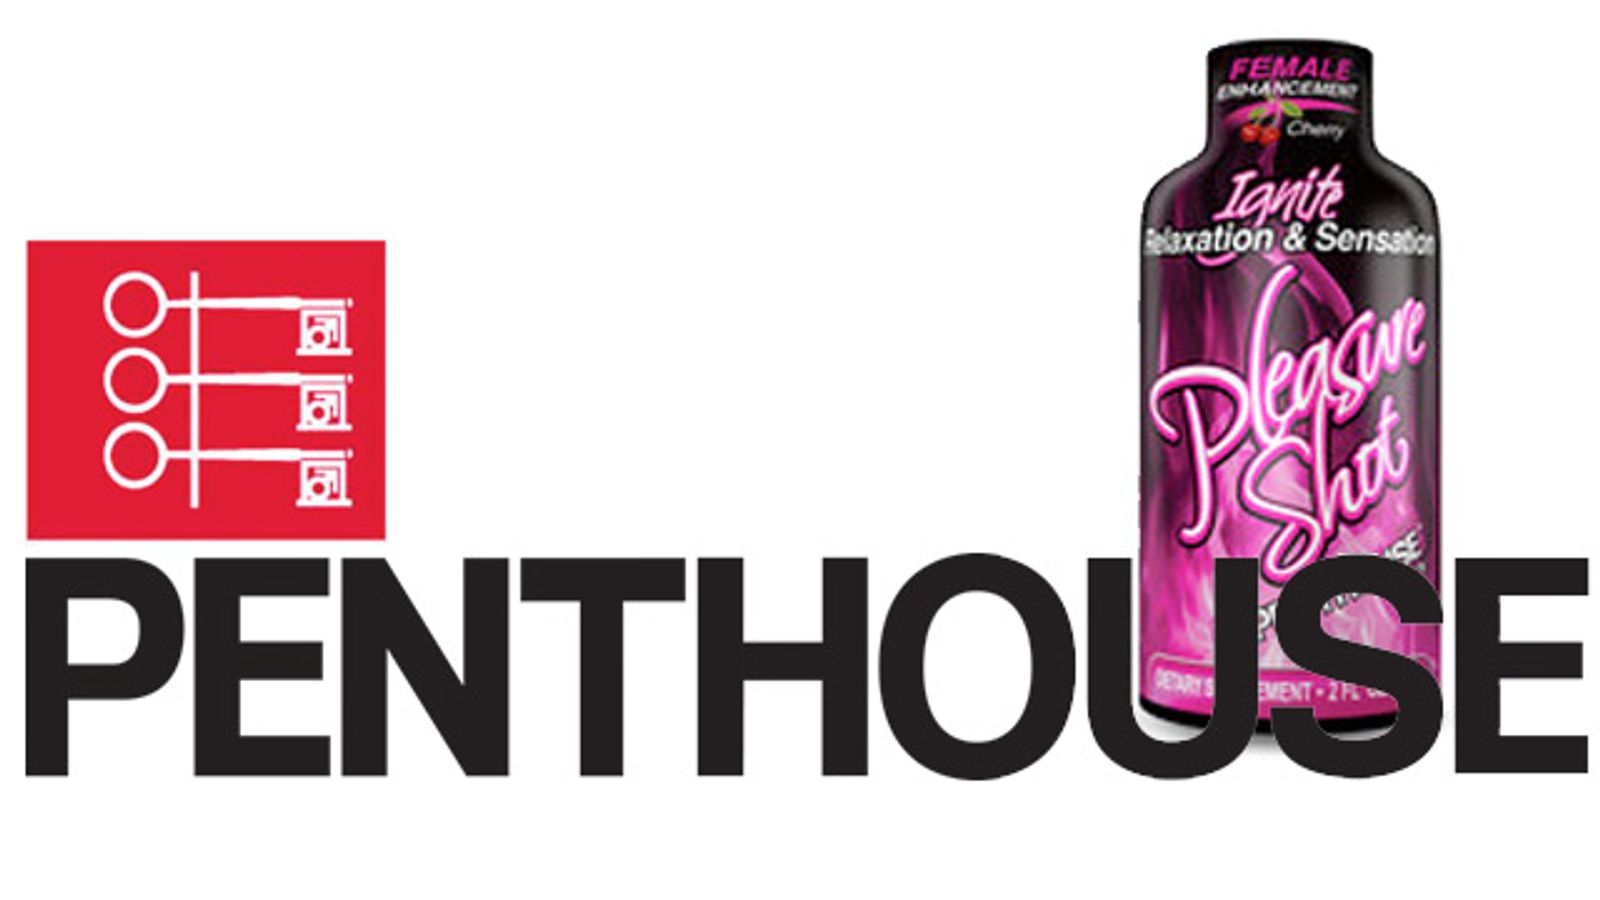 Penthouse Enters Sexual Supplement Market